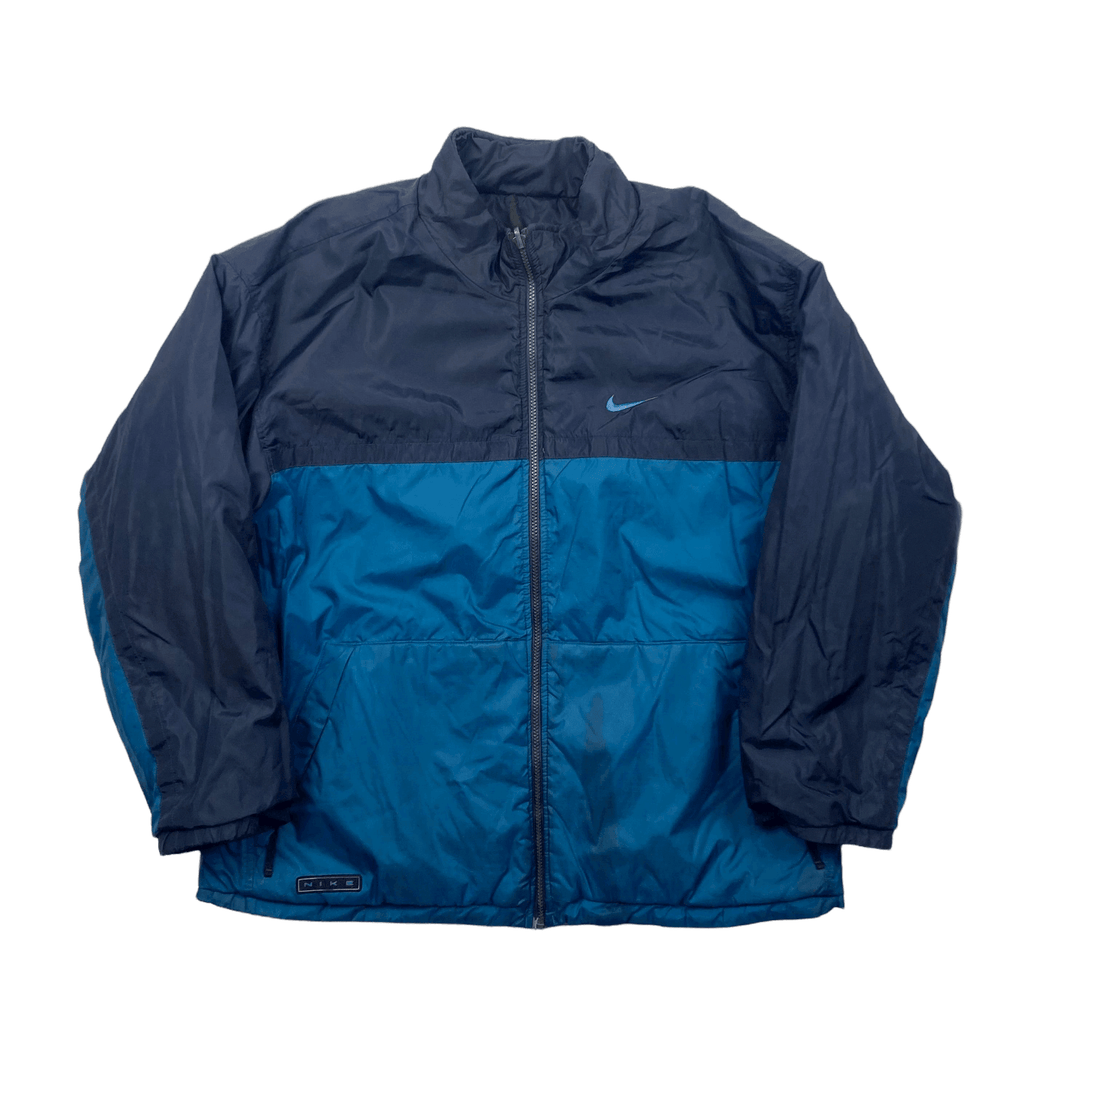 Vintage 90s Navy Blue Nike Reversible Coat/ Jacket - Large - The Streetwear Studio